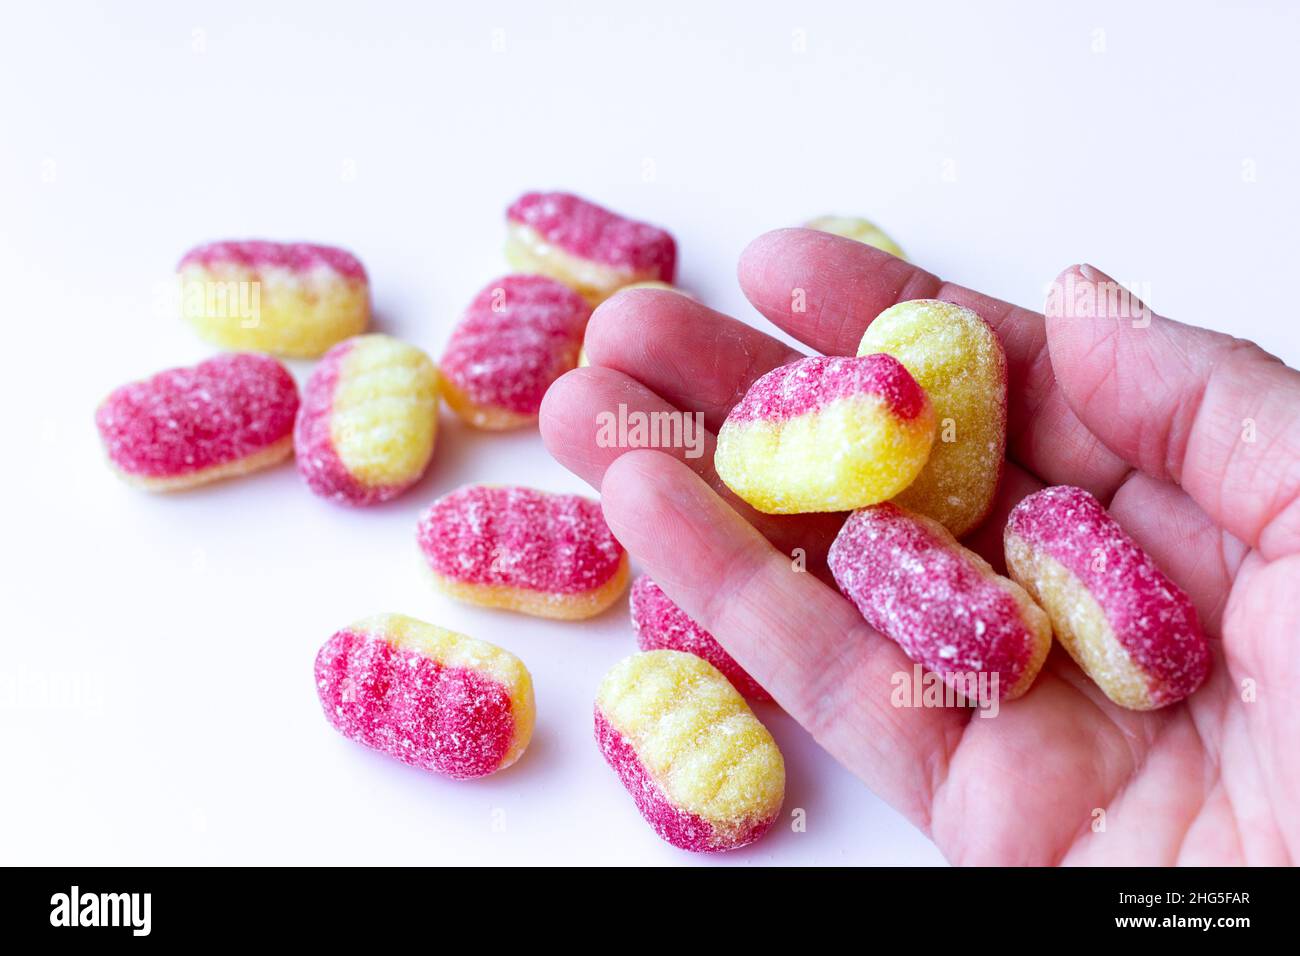 Ruibarbo y dulces cocidos duros de natillas Foto de stock